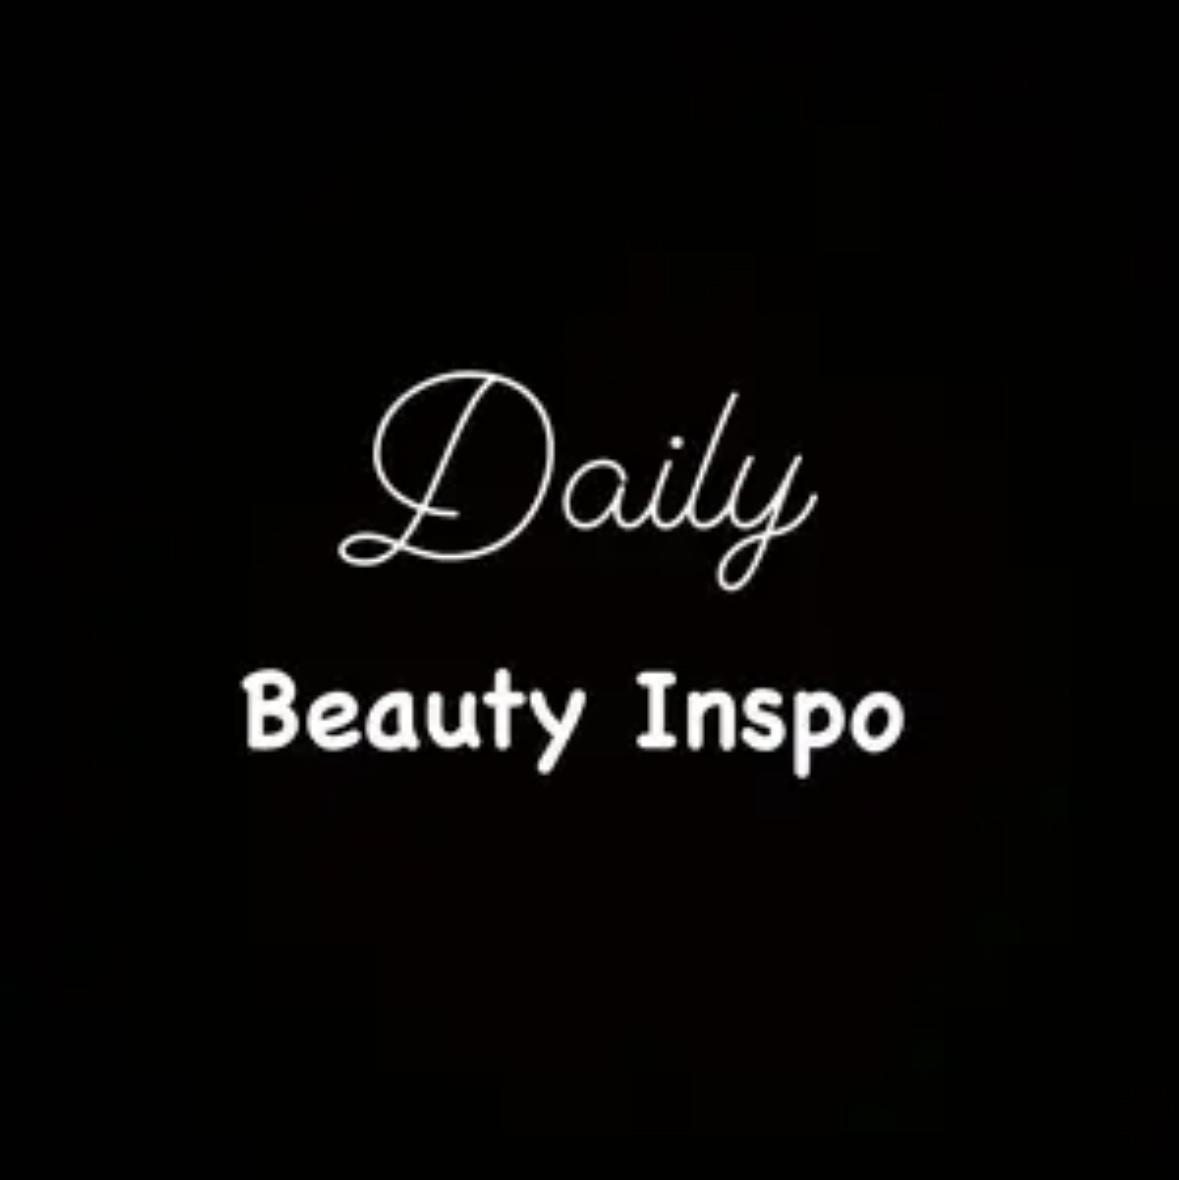 Beauty Inspo 's images